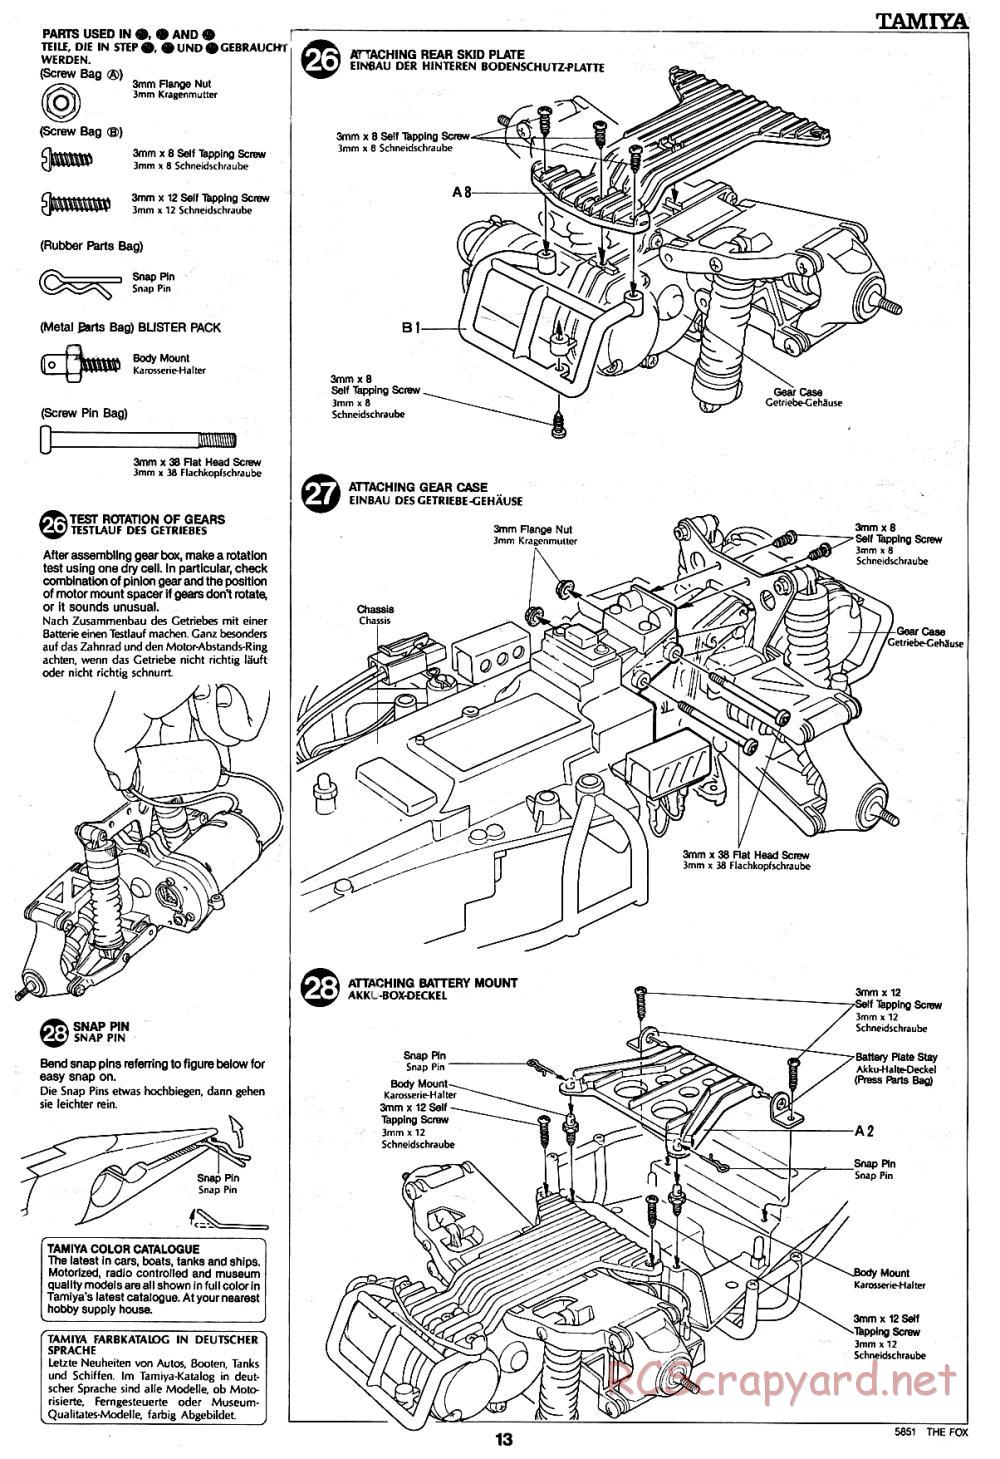 Tamiya - The Fox - 58051 - Manual - Page 13